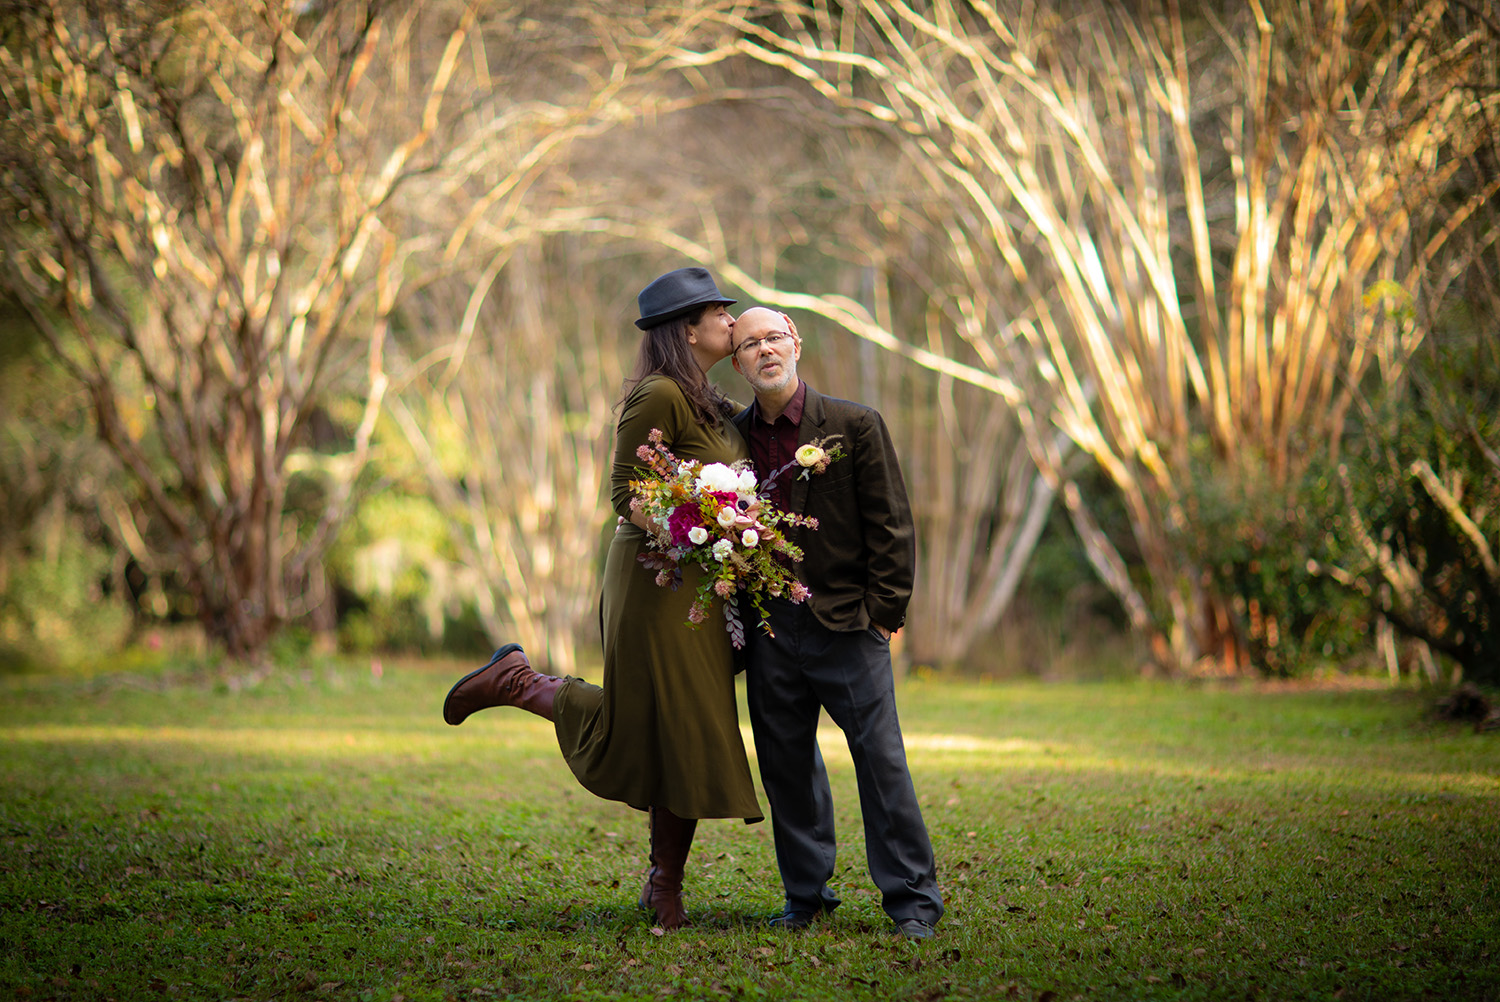 Ambrose Wedding on Monday, Dec. 21, 2020 in Gainesville, Fla. (Photo by Matt Stamey)